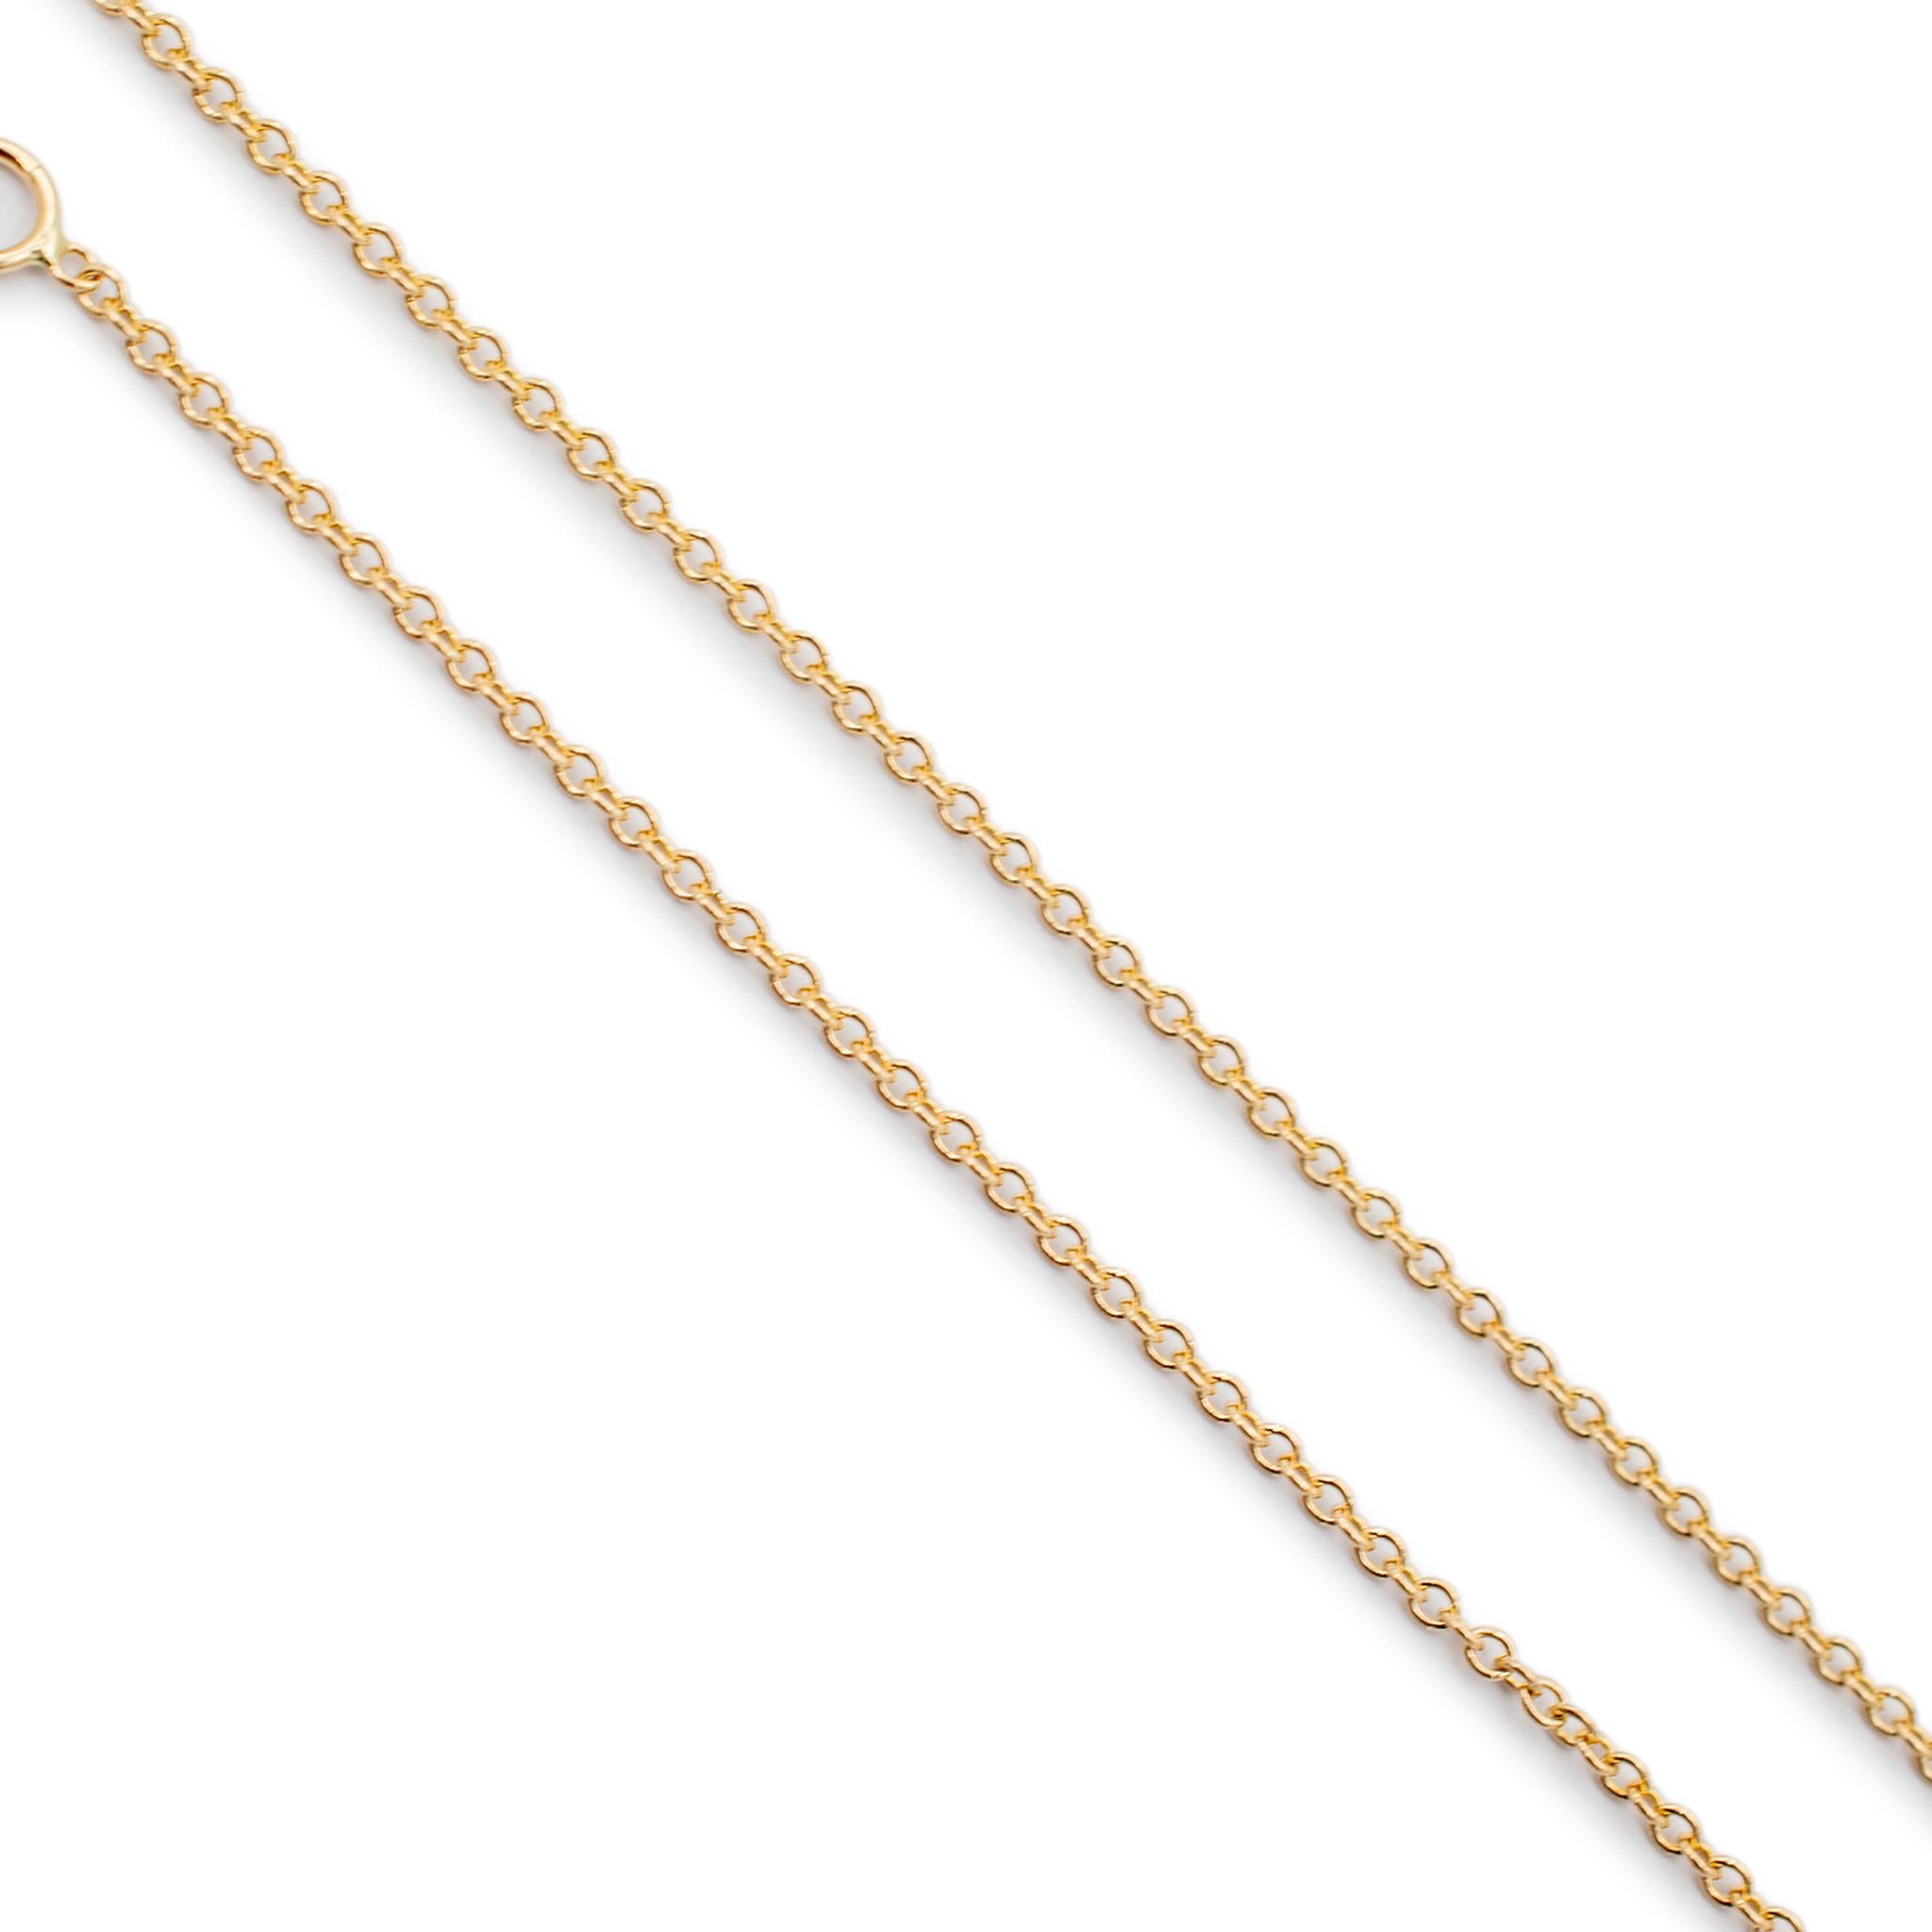 Taille ronde The Ladies 14K Yellow Gold by the Yard Diamond Chain Necklace (Collier de chaîne en or jaune 14K avec diamants) en vente